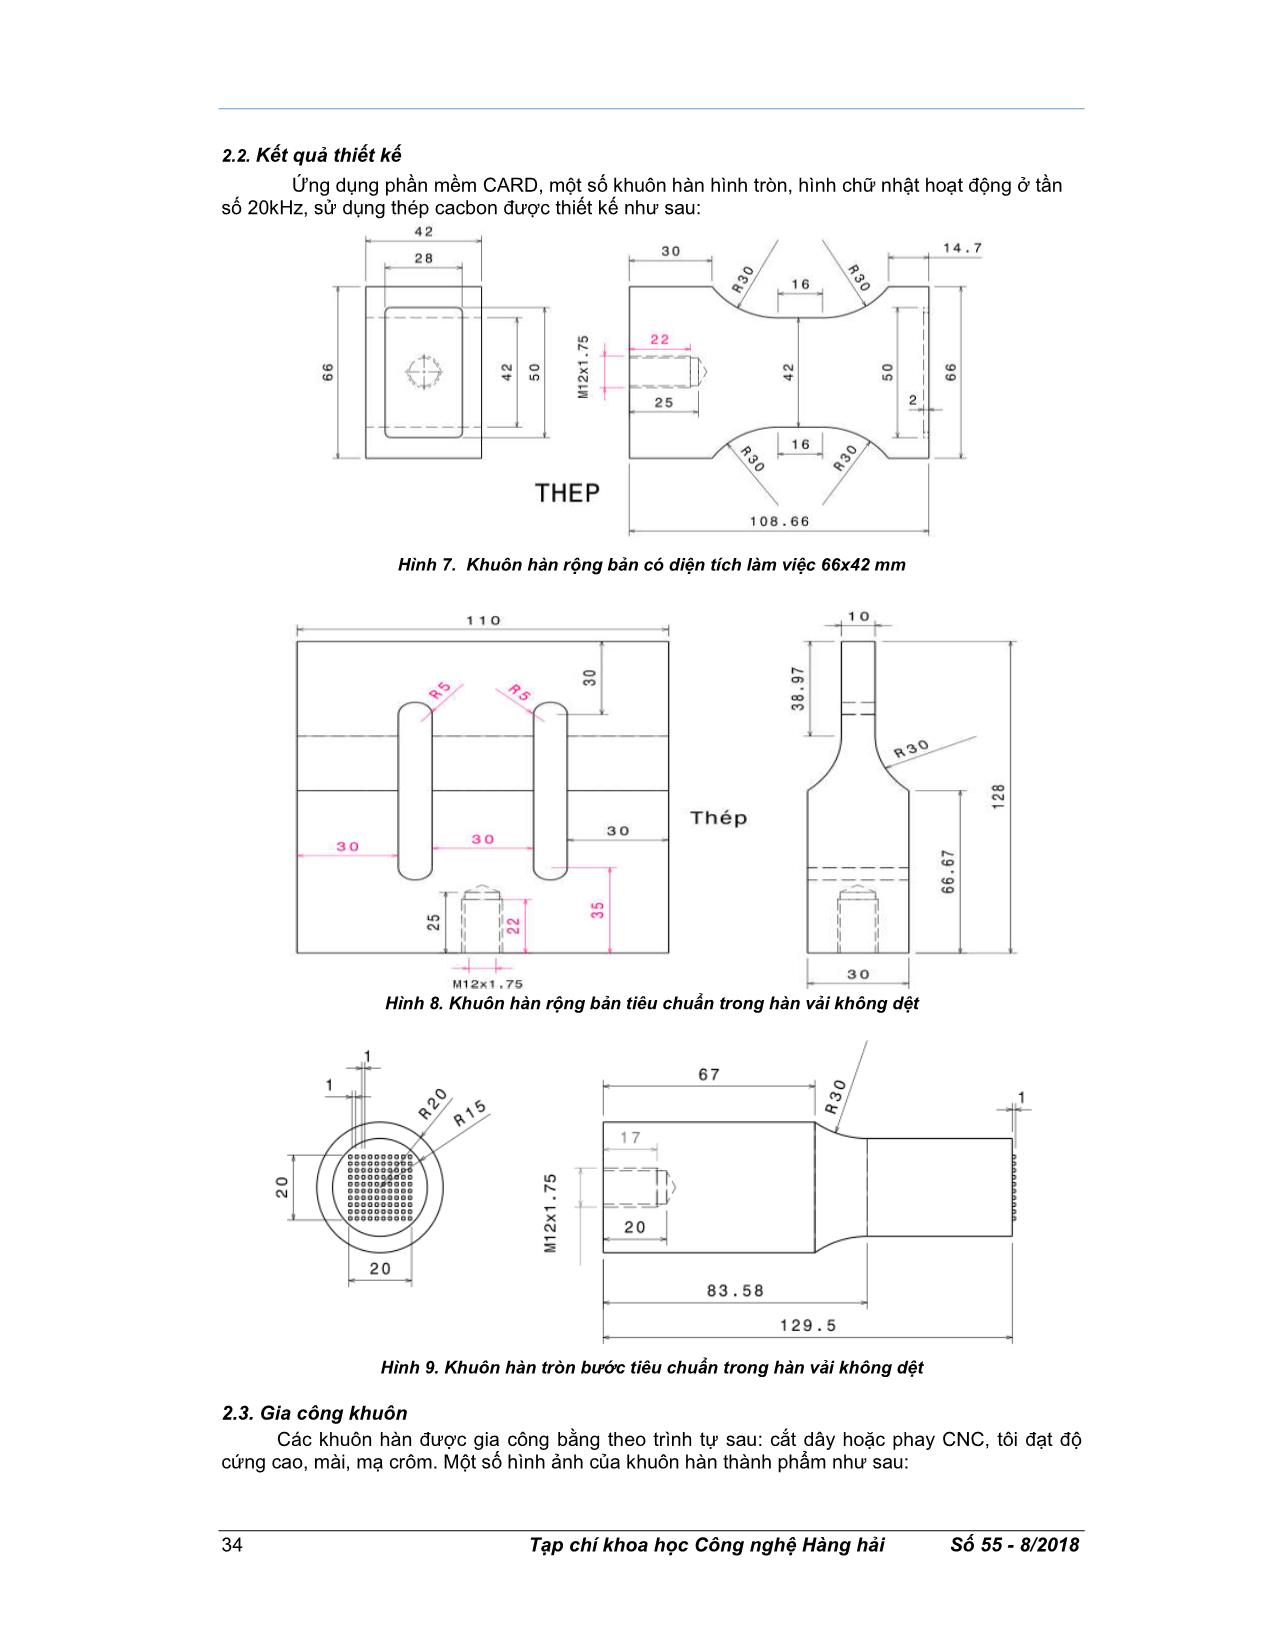 Nghiên cứu chế tạo thử nghiệm khuôn hàn thép cho máy hàn nhựa nhiệt dẻo bằng công nghệ siêu âm trang 4